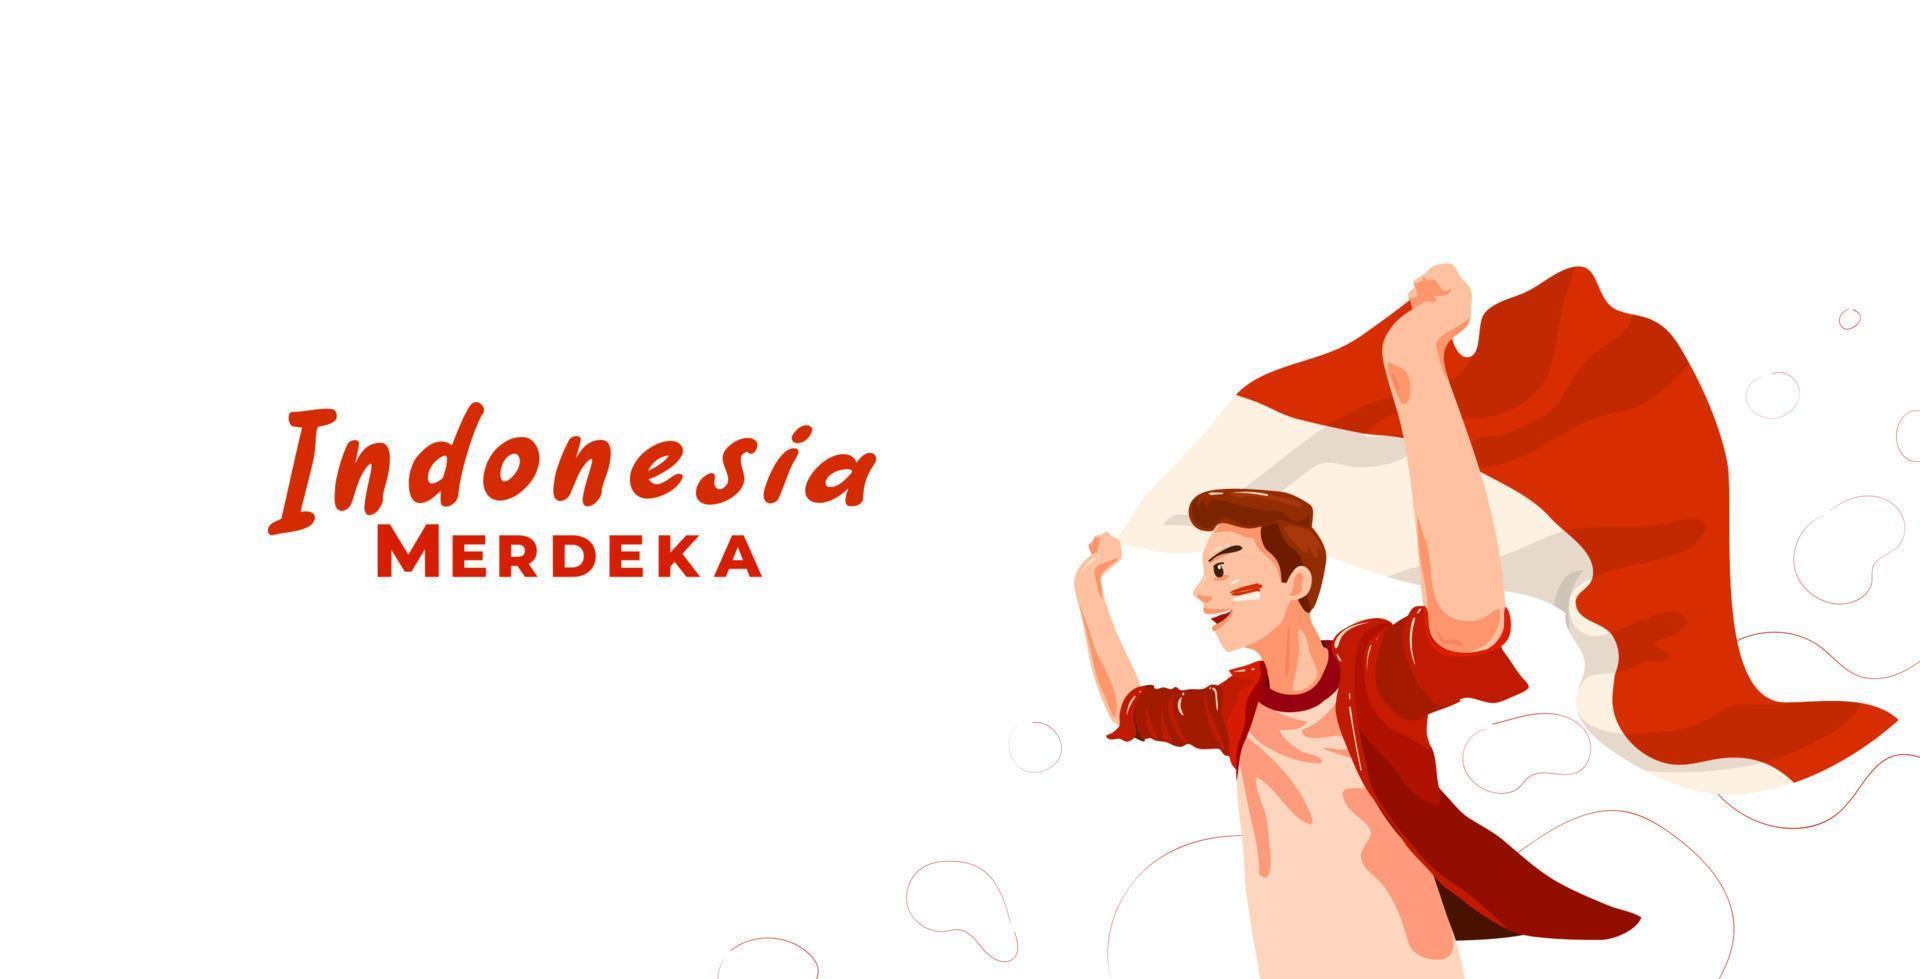 joven indonesio celebrando el día de la independencia de indonesia con bandera ondeante. merdeka se traduce como independencia o libertad o independiente vector